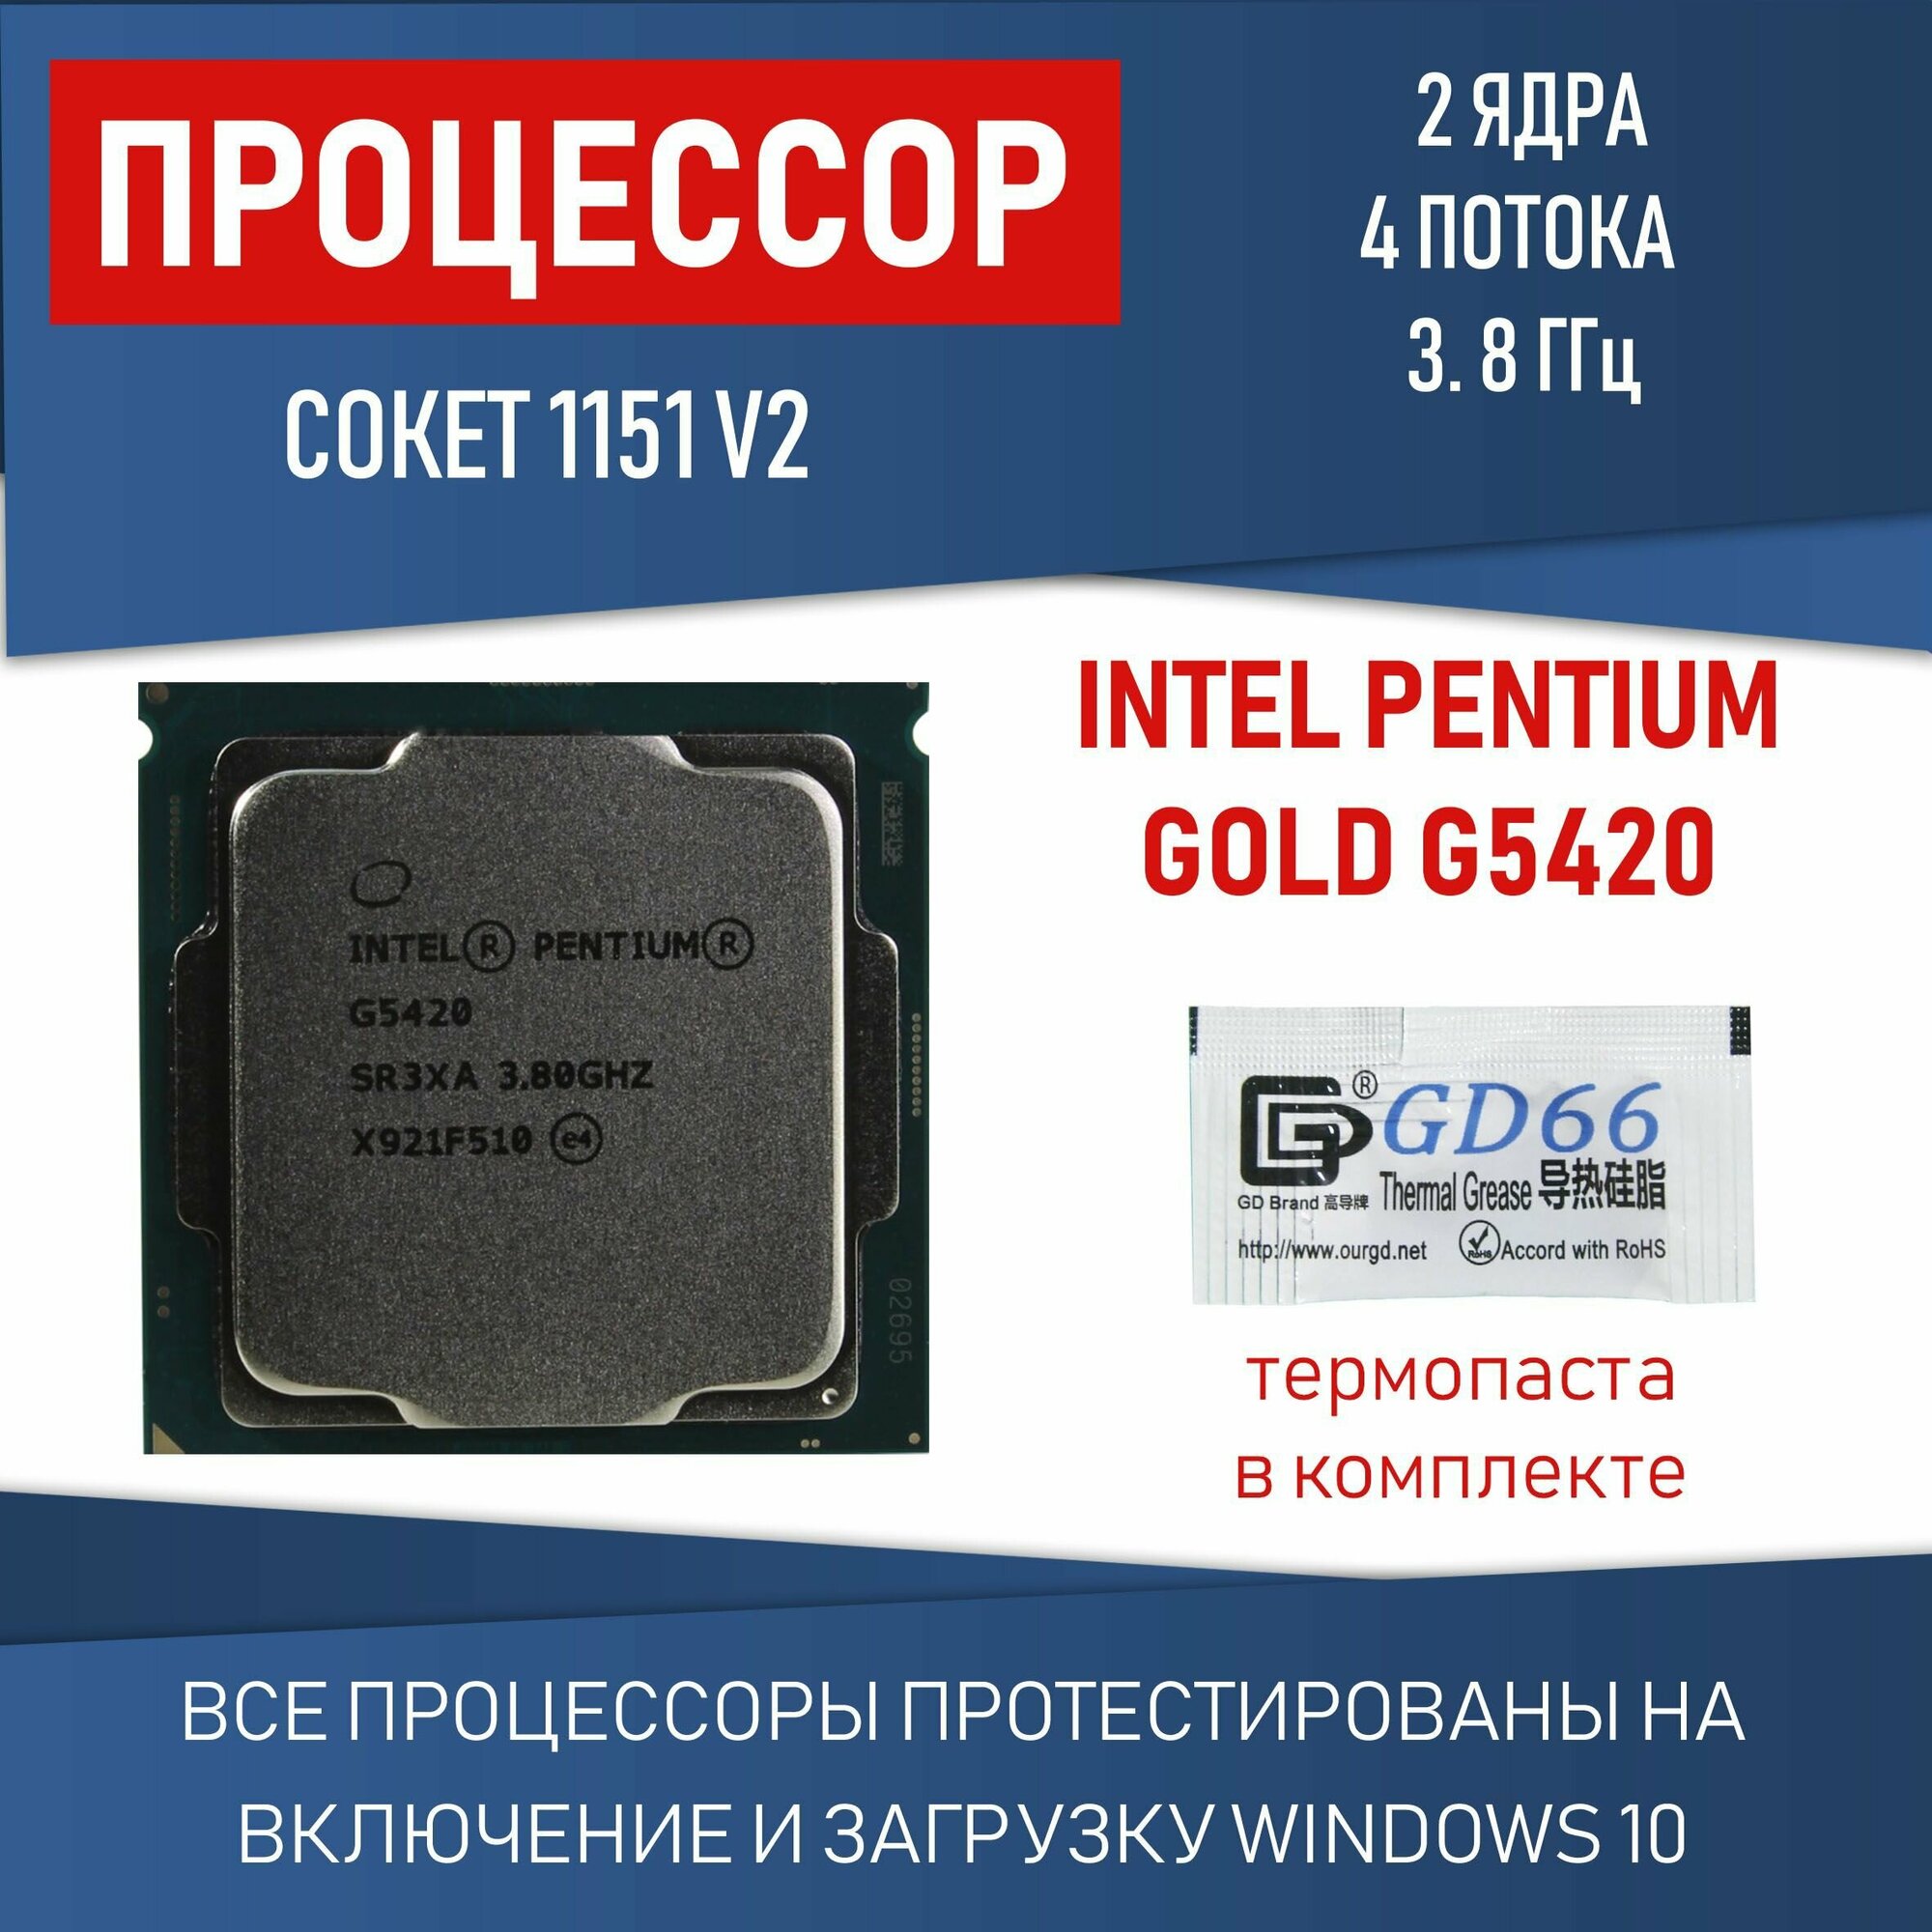 Процессор Intel Pentium Gold G5420 сокет 1151 v2 2 ядра 4 потока 3,8ГГц 54 Вт OEM